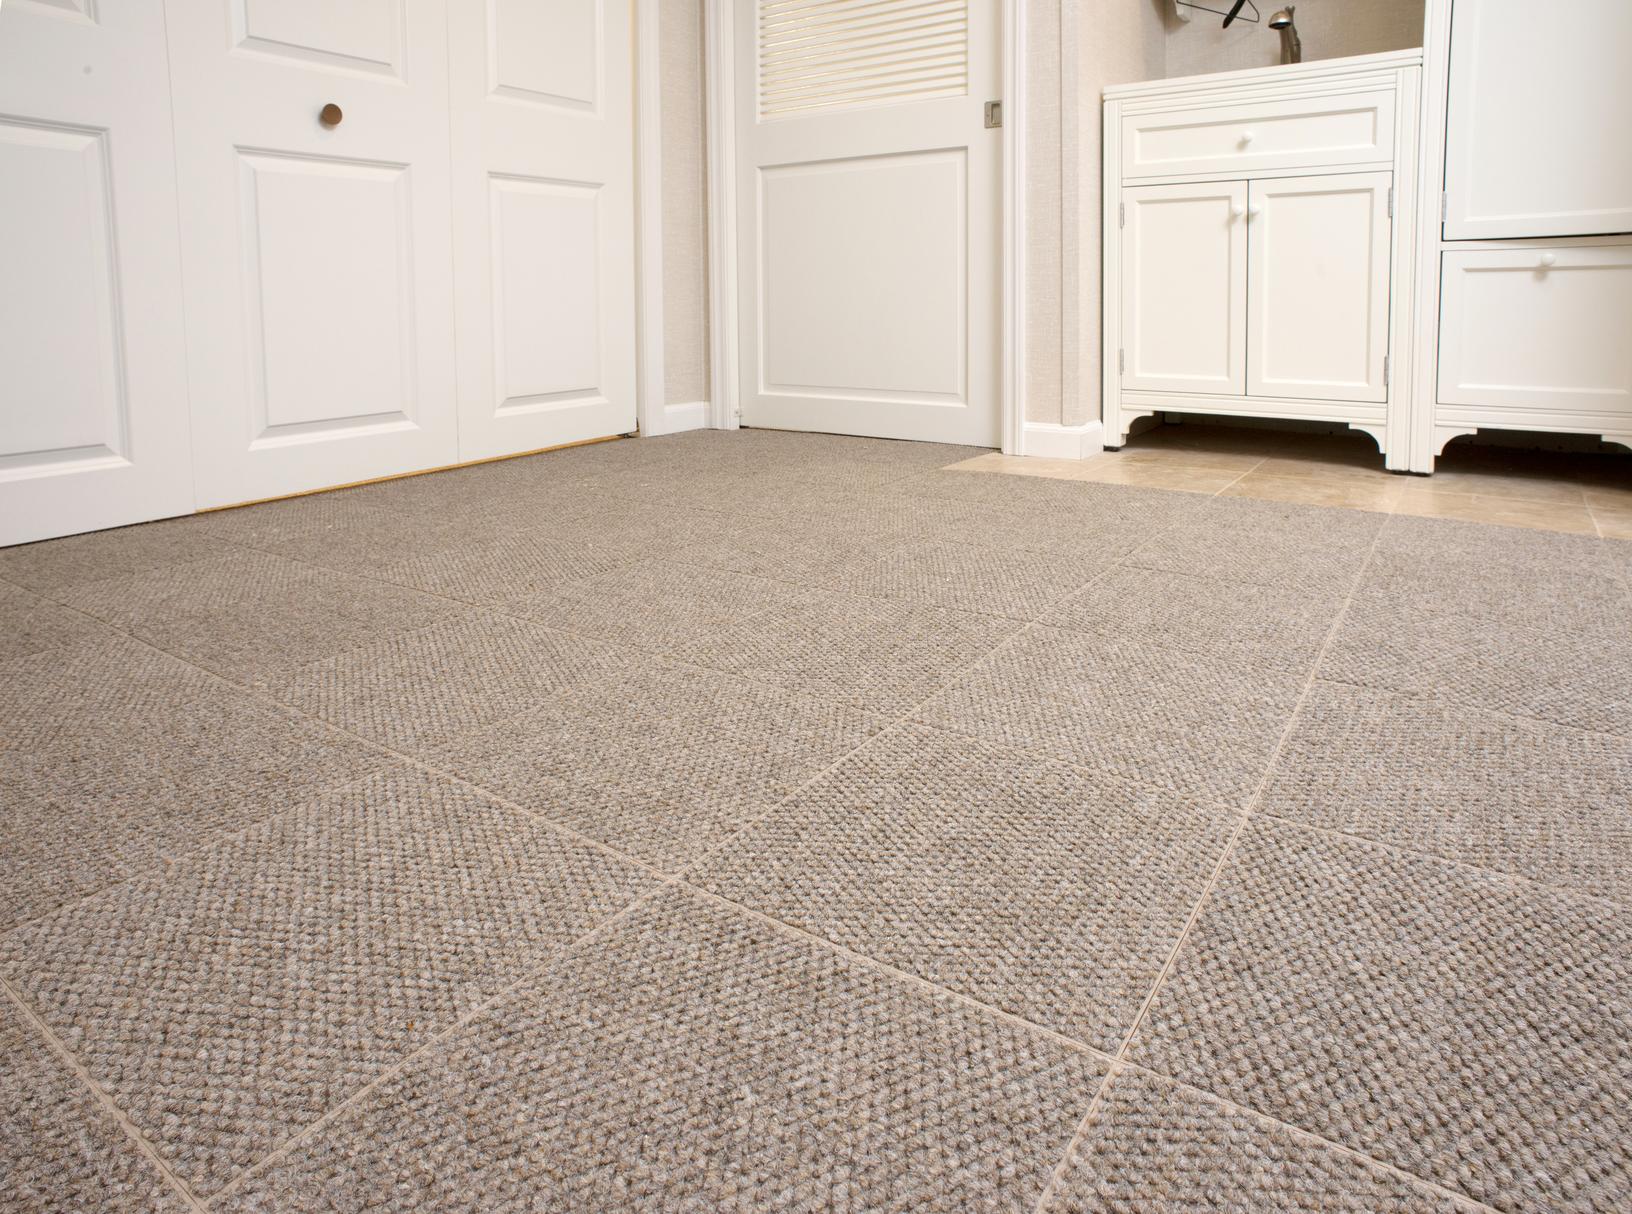 Carpet Tiles For Concrete Basement Floor – Flooring Tips